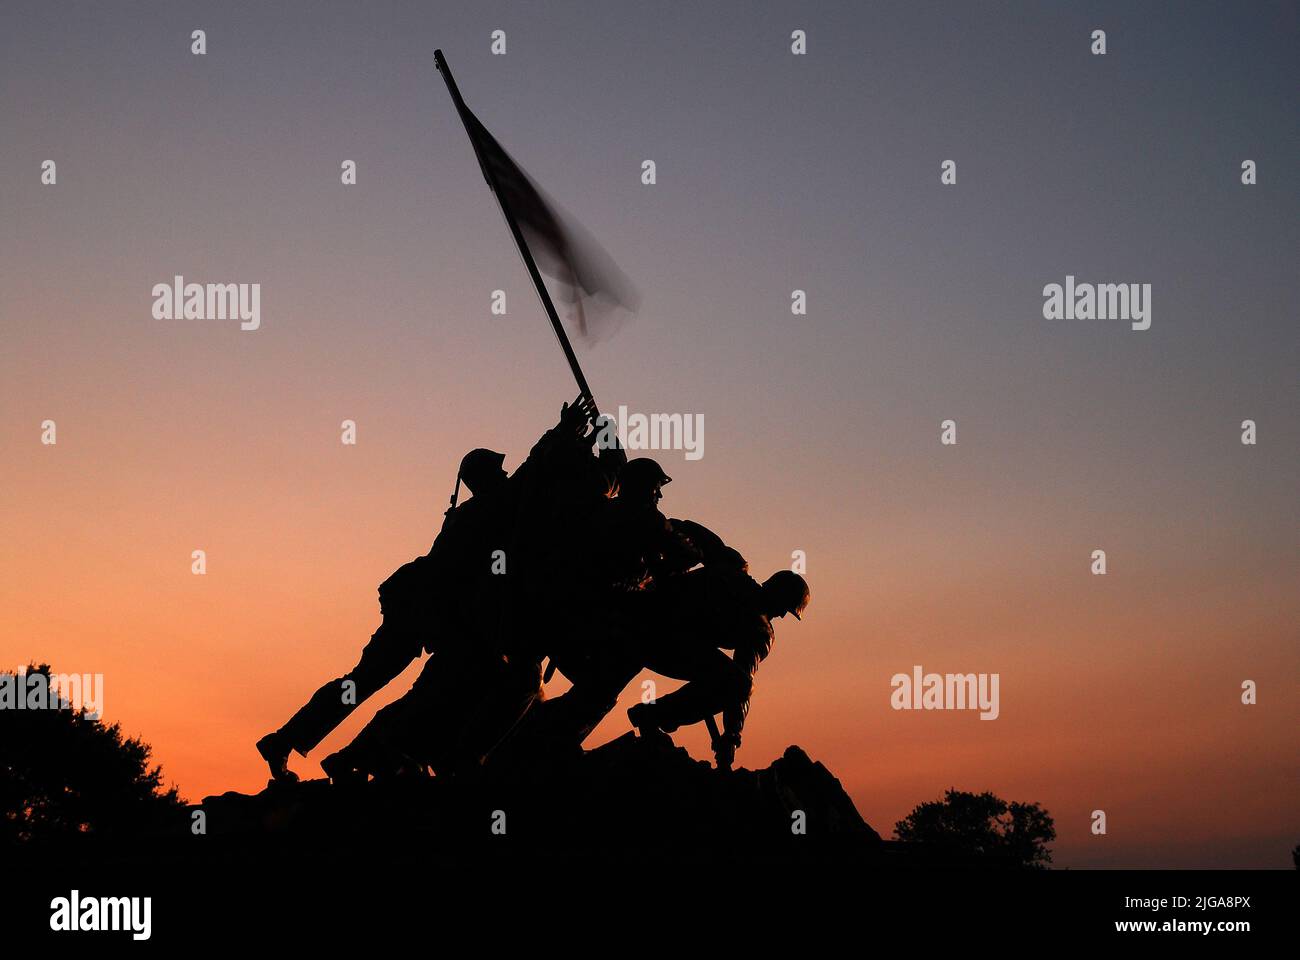 US Marine Corp Memorial, une sculpture à Arlington, Virginie, près de Washington, DC montre la montée du drapeau américain sur Iwo Jima pendant la Seconde Guerre mondiale Banque D'Images